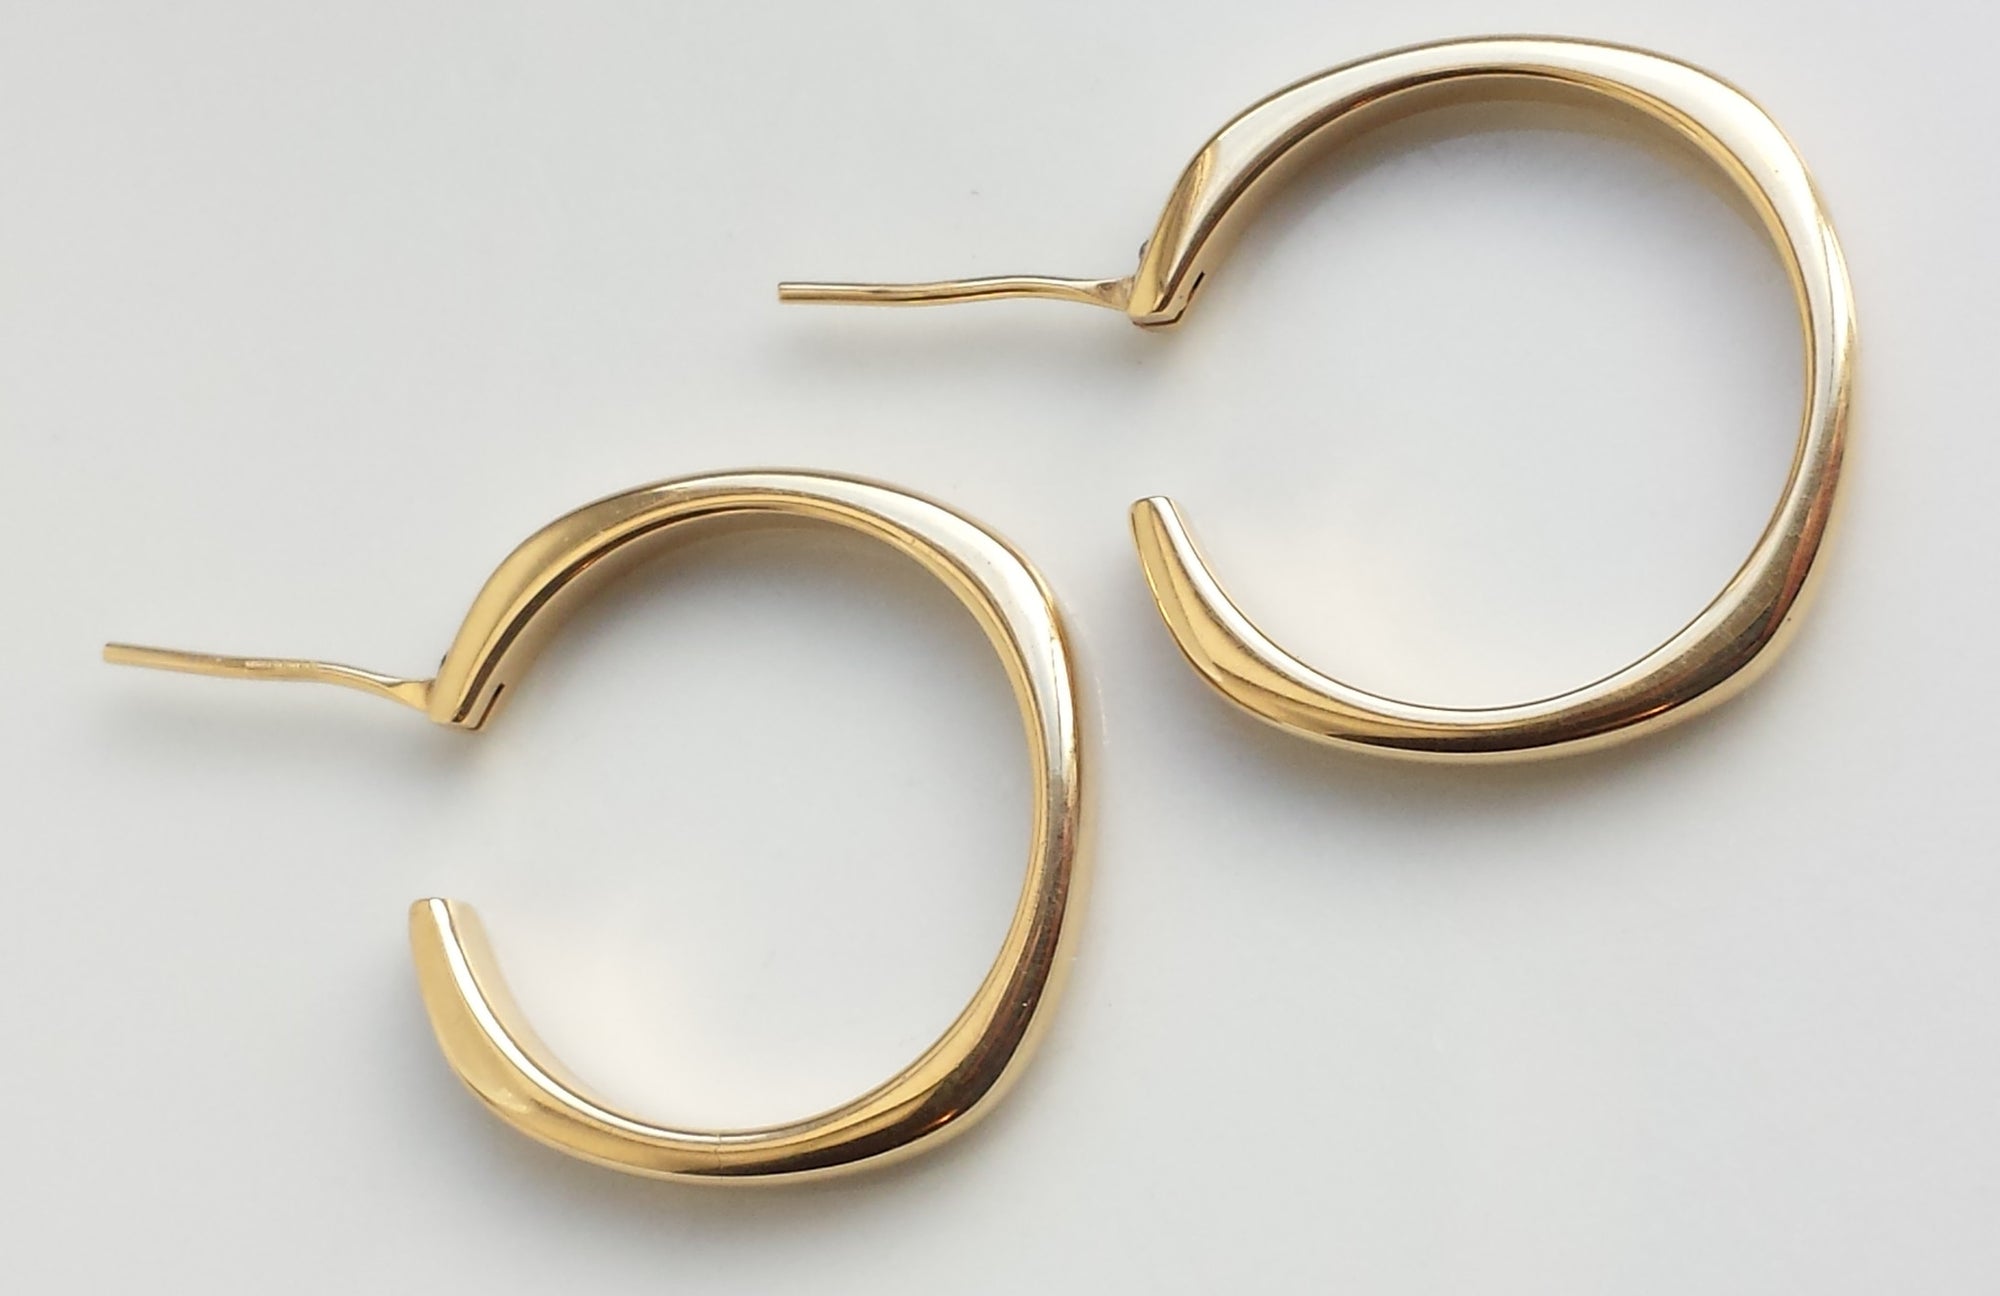 Tiffany & Co. Vintage 18k Yellow Gold Large Hoop Earrings 25mm diameter